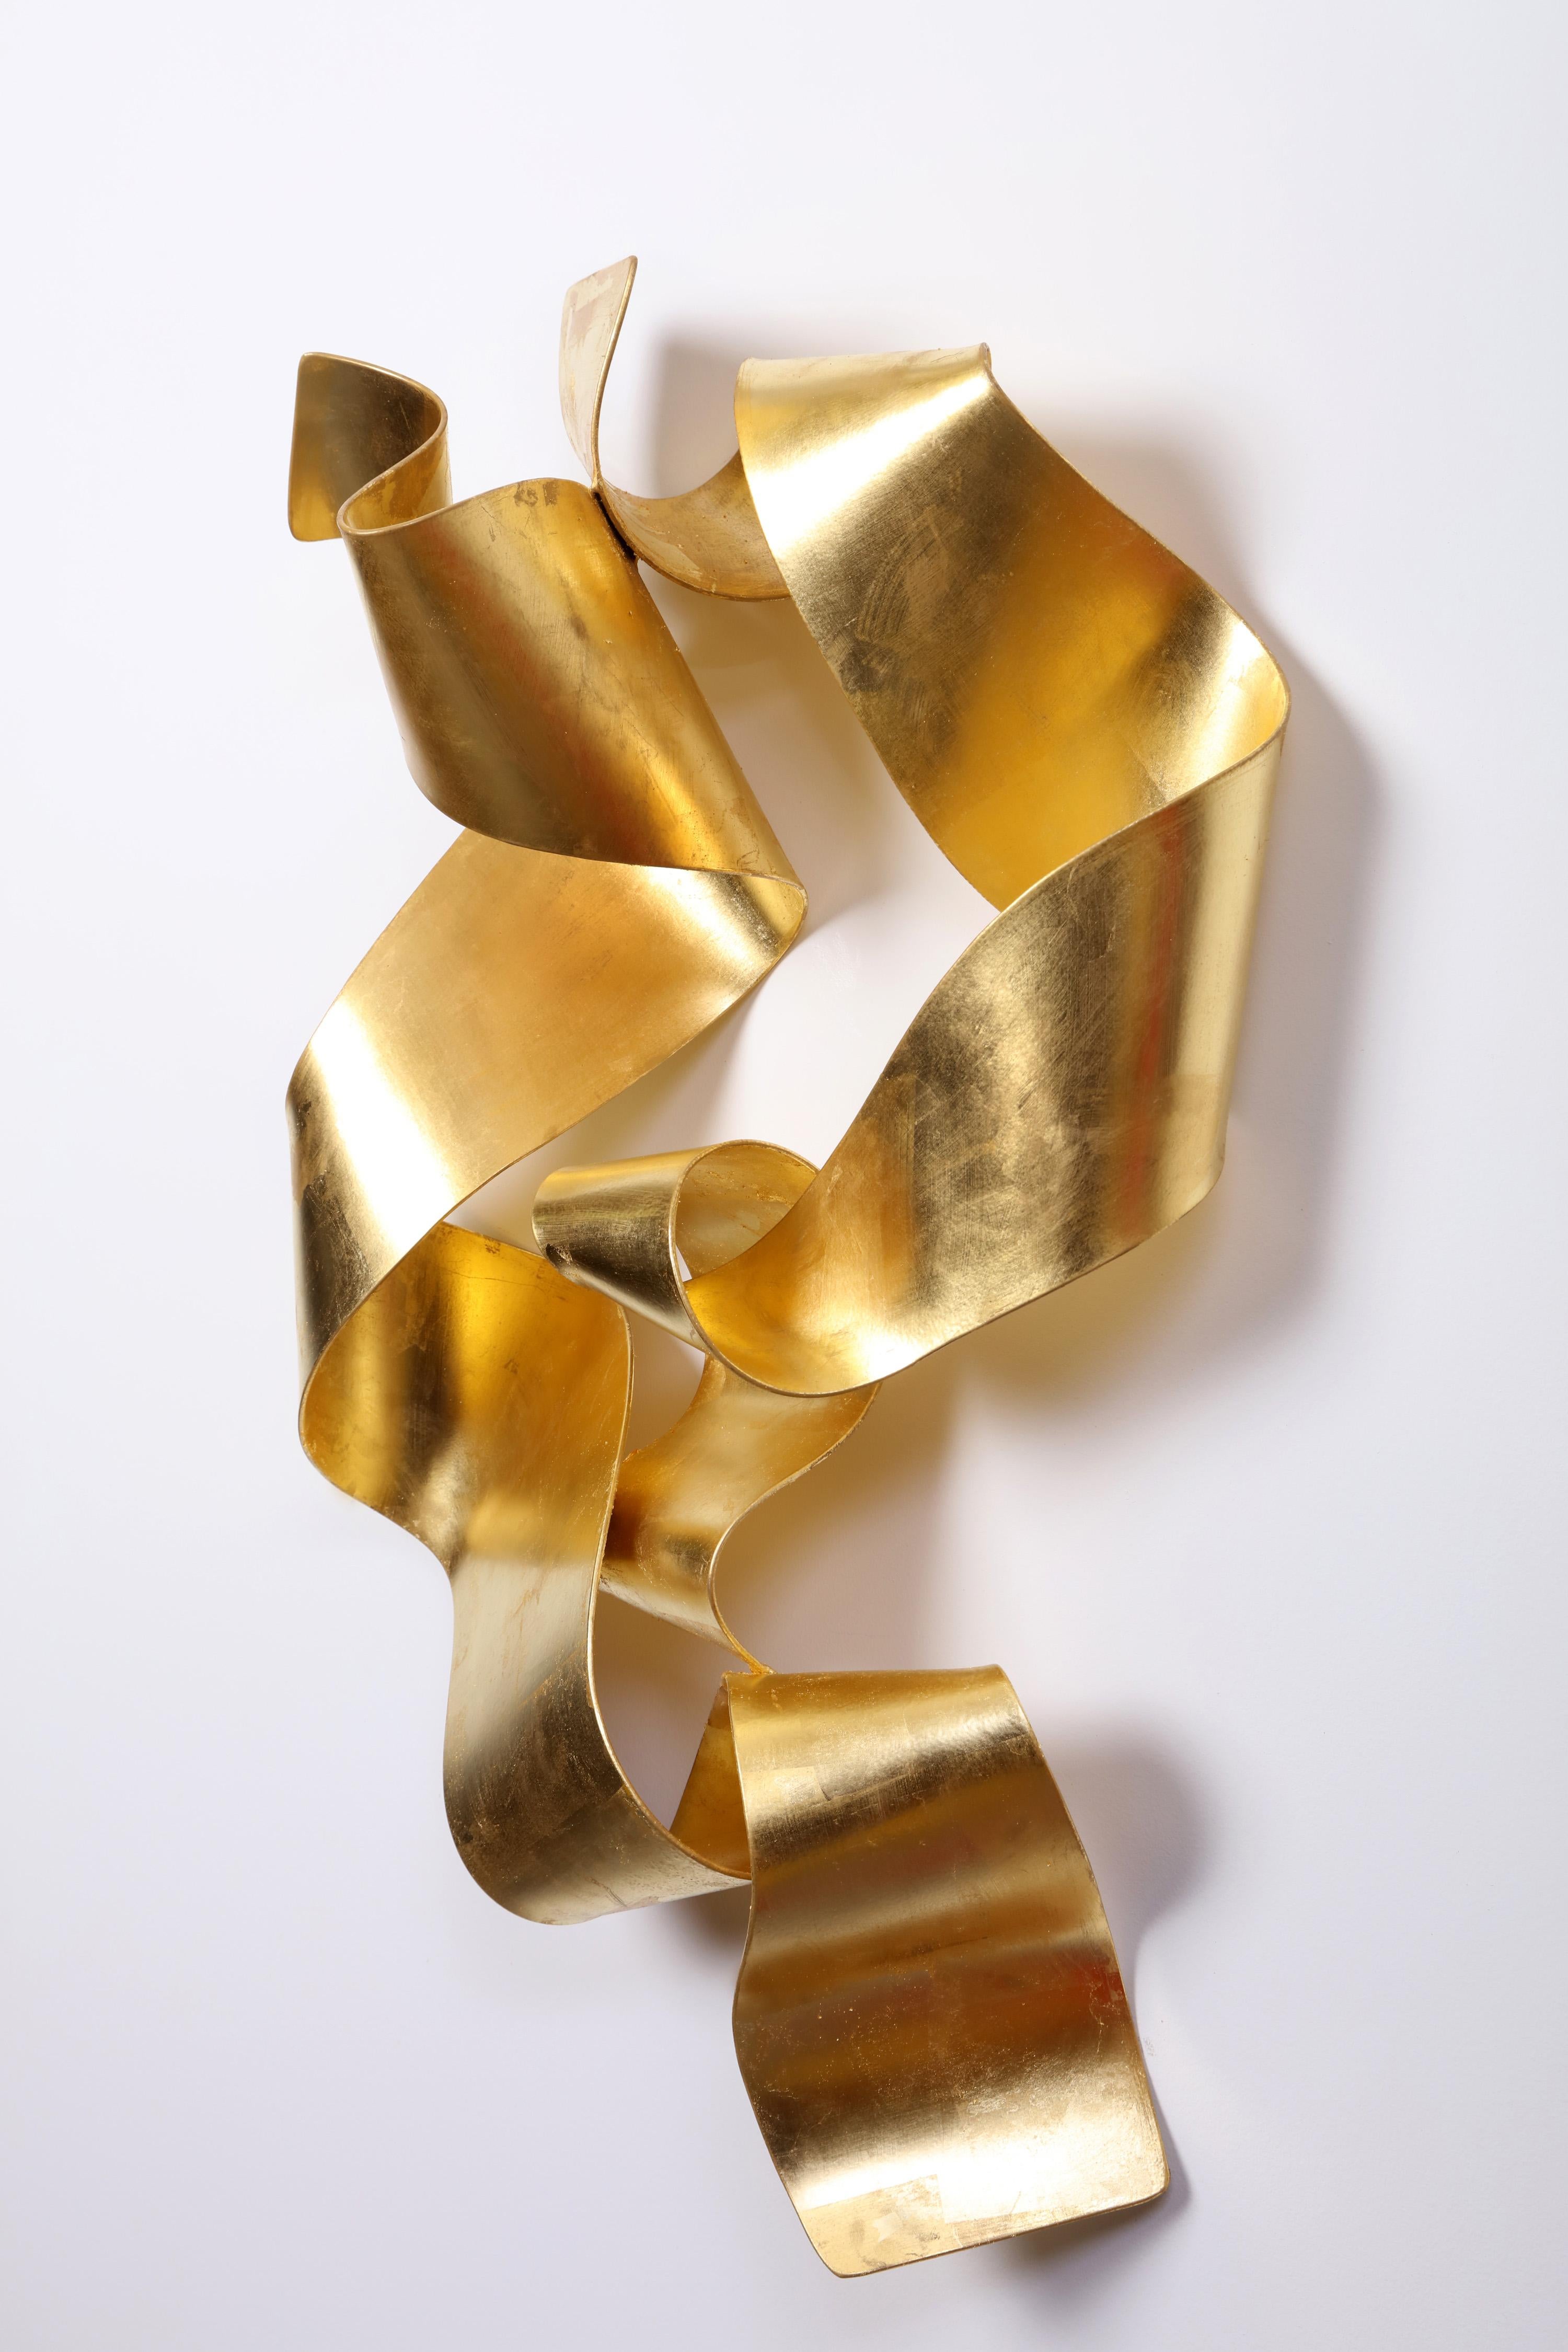 Soul Gate Eldorado - contemporary, ribbon, 24K gold, steel, wall sculpture - Contemporary Sculpture by Stefan Duerst